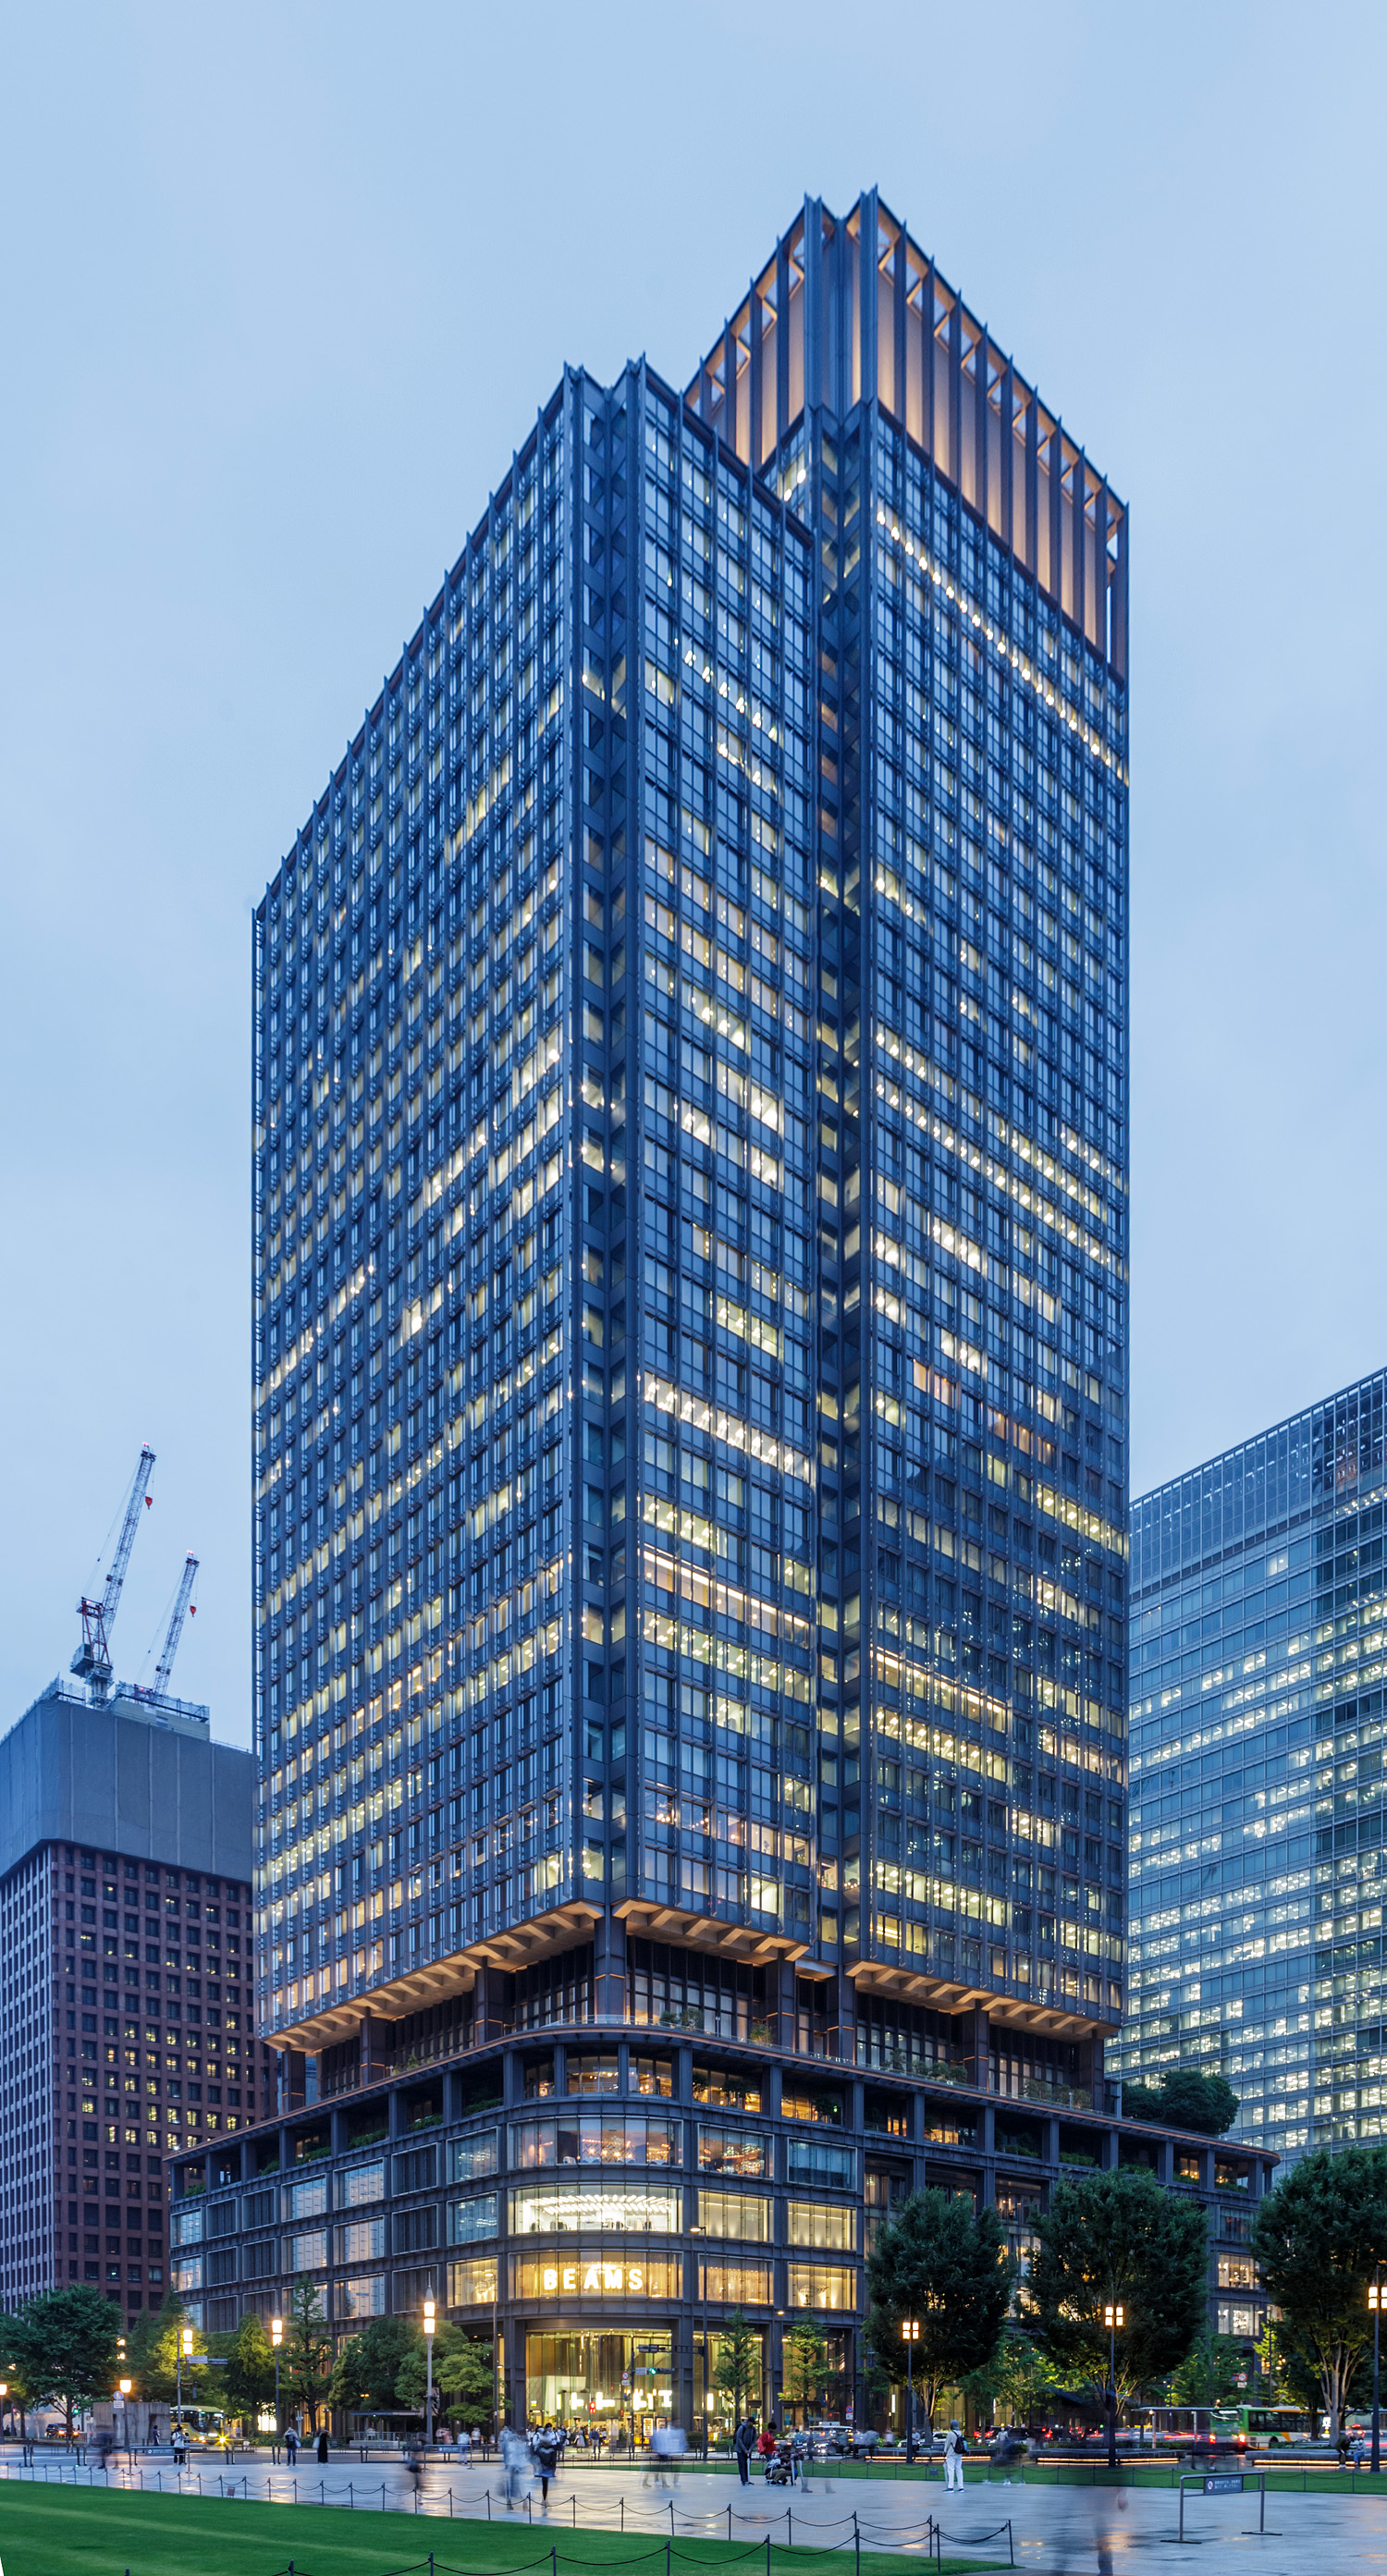 Shin-Marunouchi Building, Tokyo - View from the southeast. © Mathias Beinling